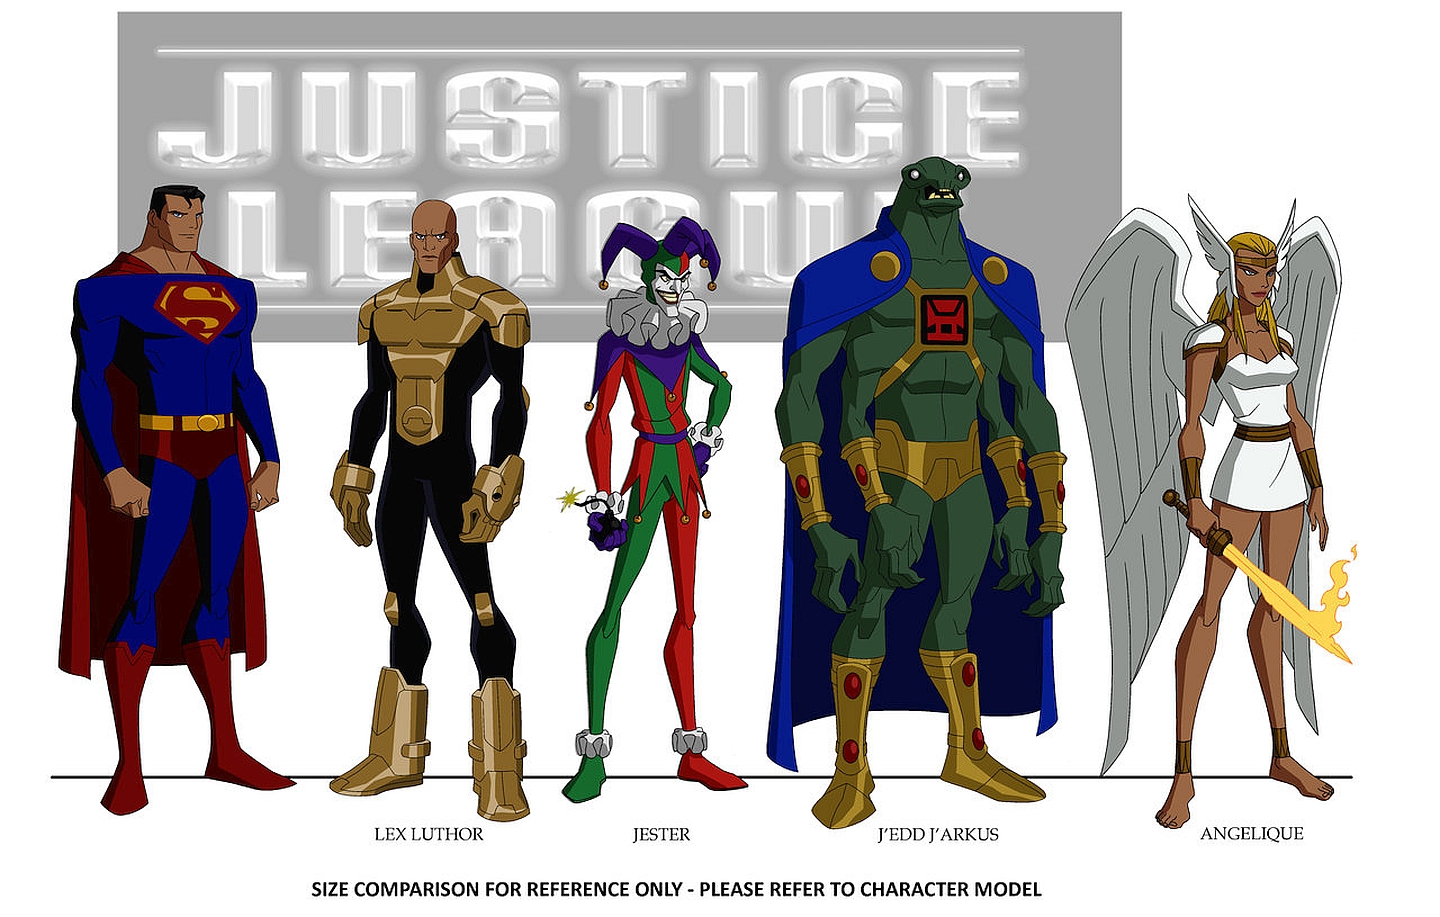 movie, justice league: crisis on two earths, angelique (dc comics), dc comics, j'edd j'arkus (dc comics), jester (dc comics), justice league, lex luthor, superman